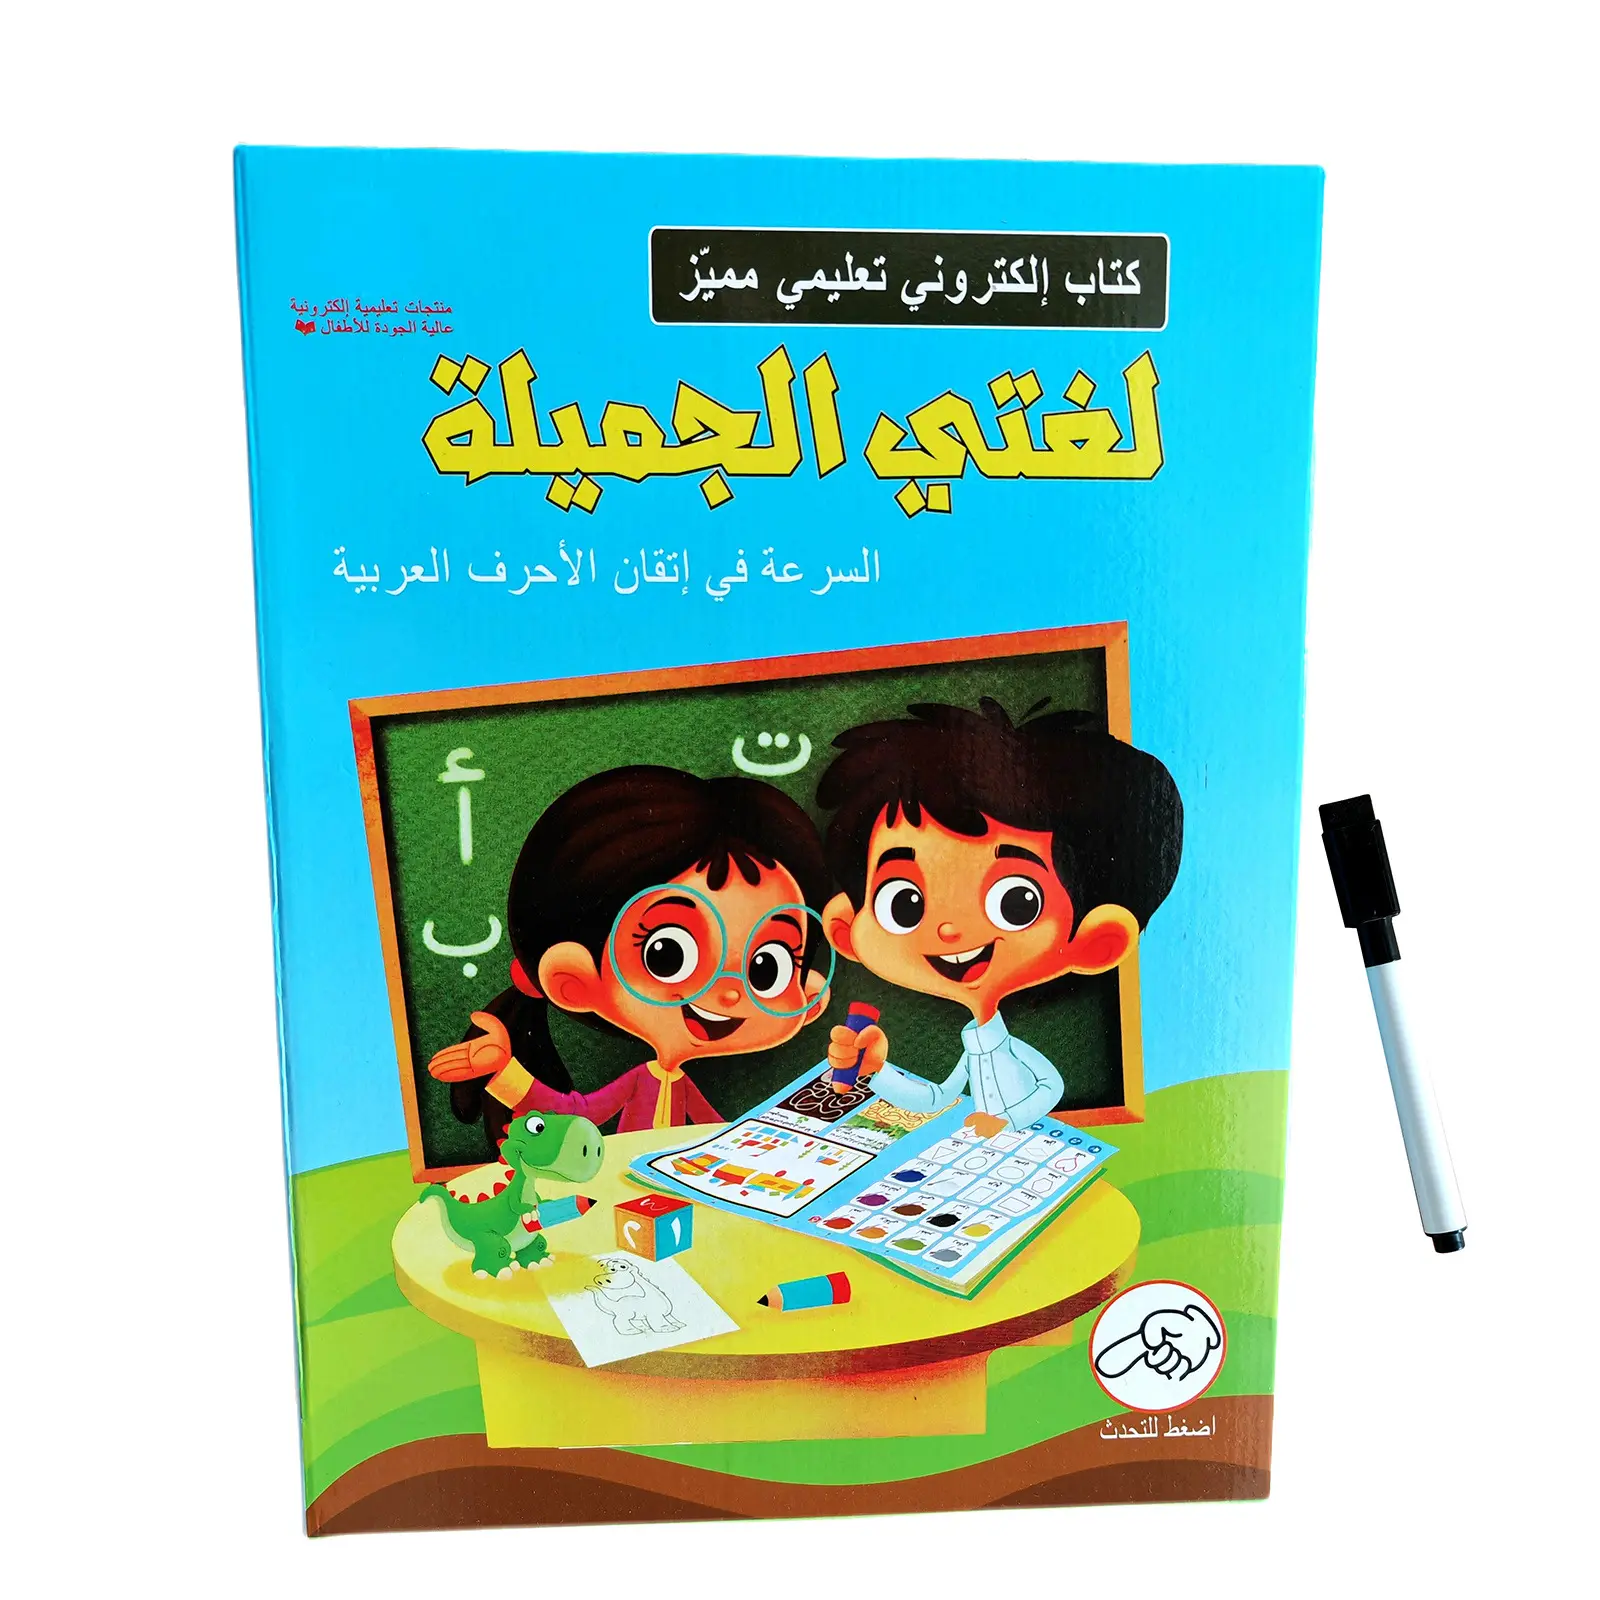 Bambini Sound insegnamento audio e-Book educazione giocattolo bambini alfabeto arabo suono per bambini libro parlante con lettore musicale